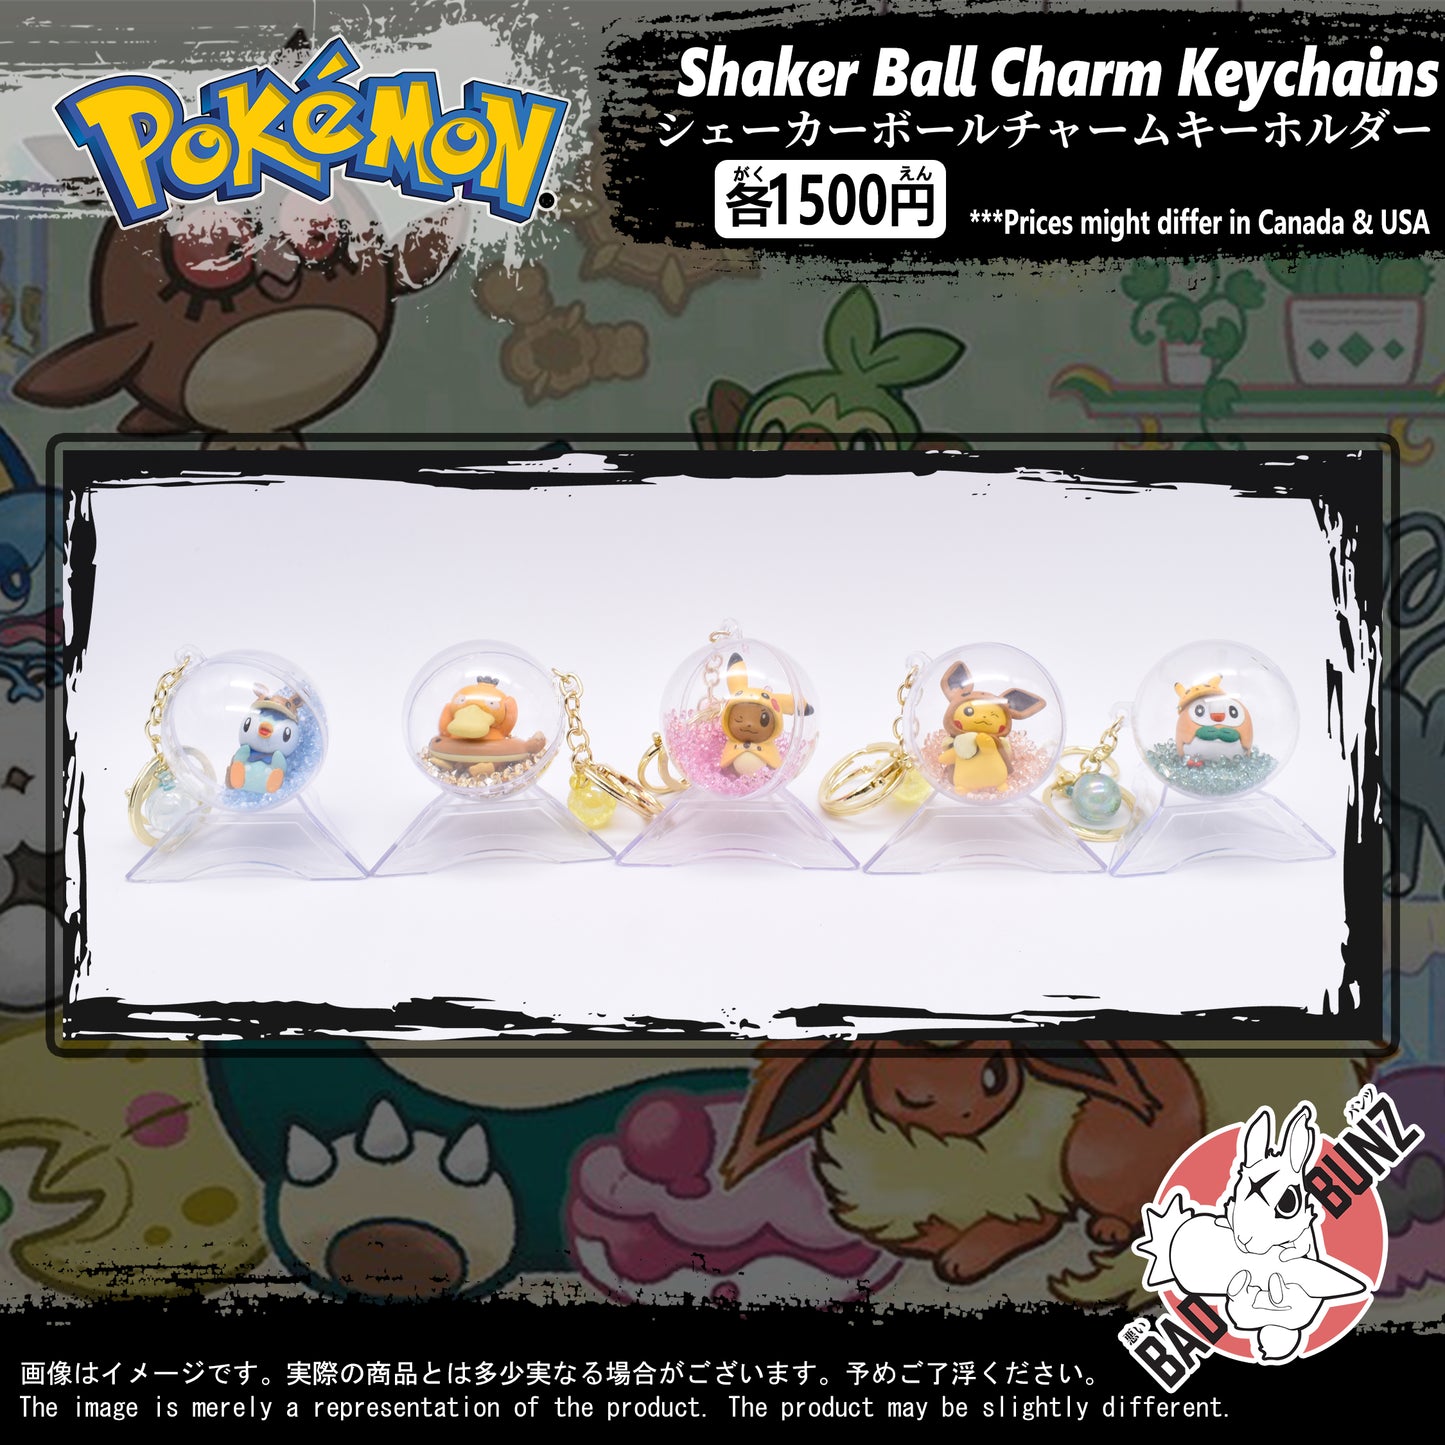 (PKM-03BALL) Pokemon Gaming Shaker Ball Charm Keychain (53, 51, 55, 52, 54)